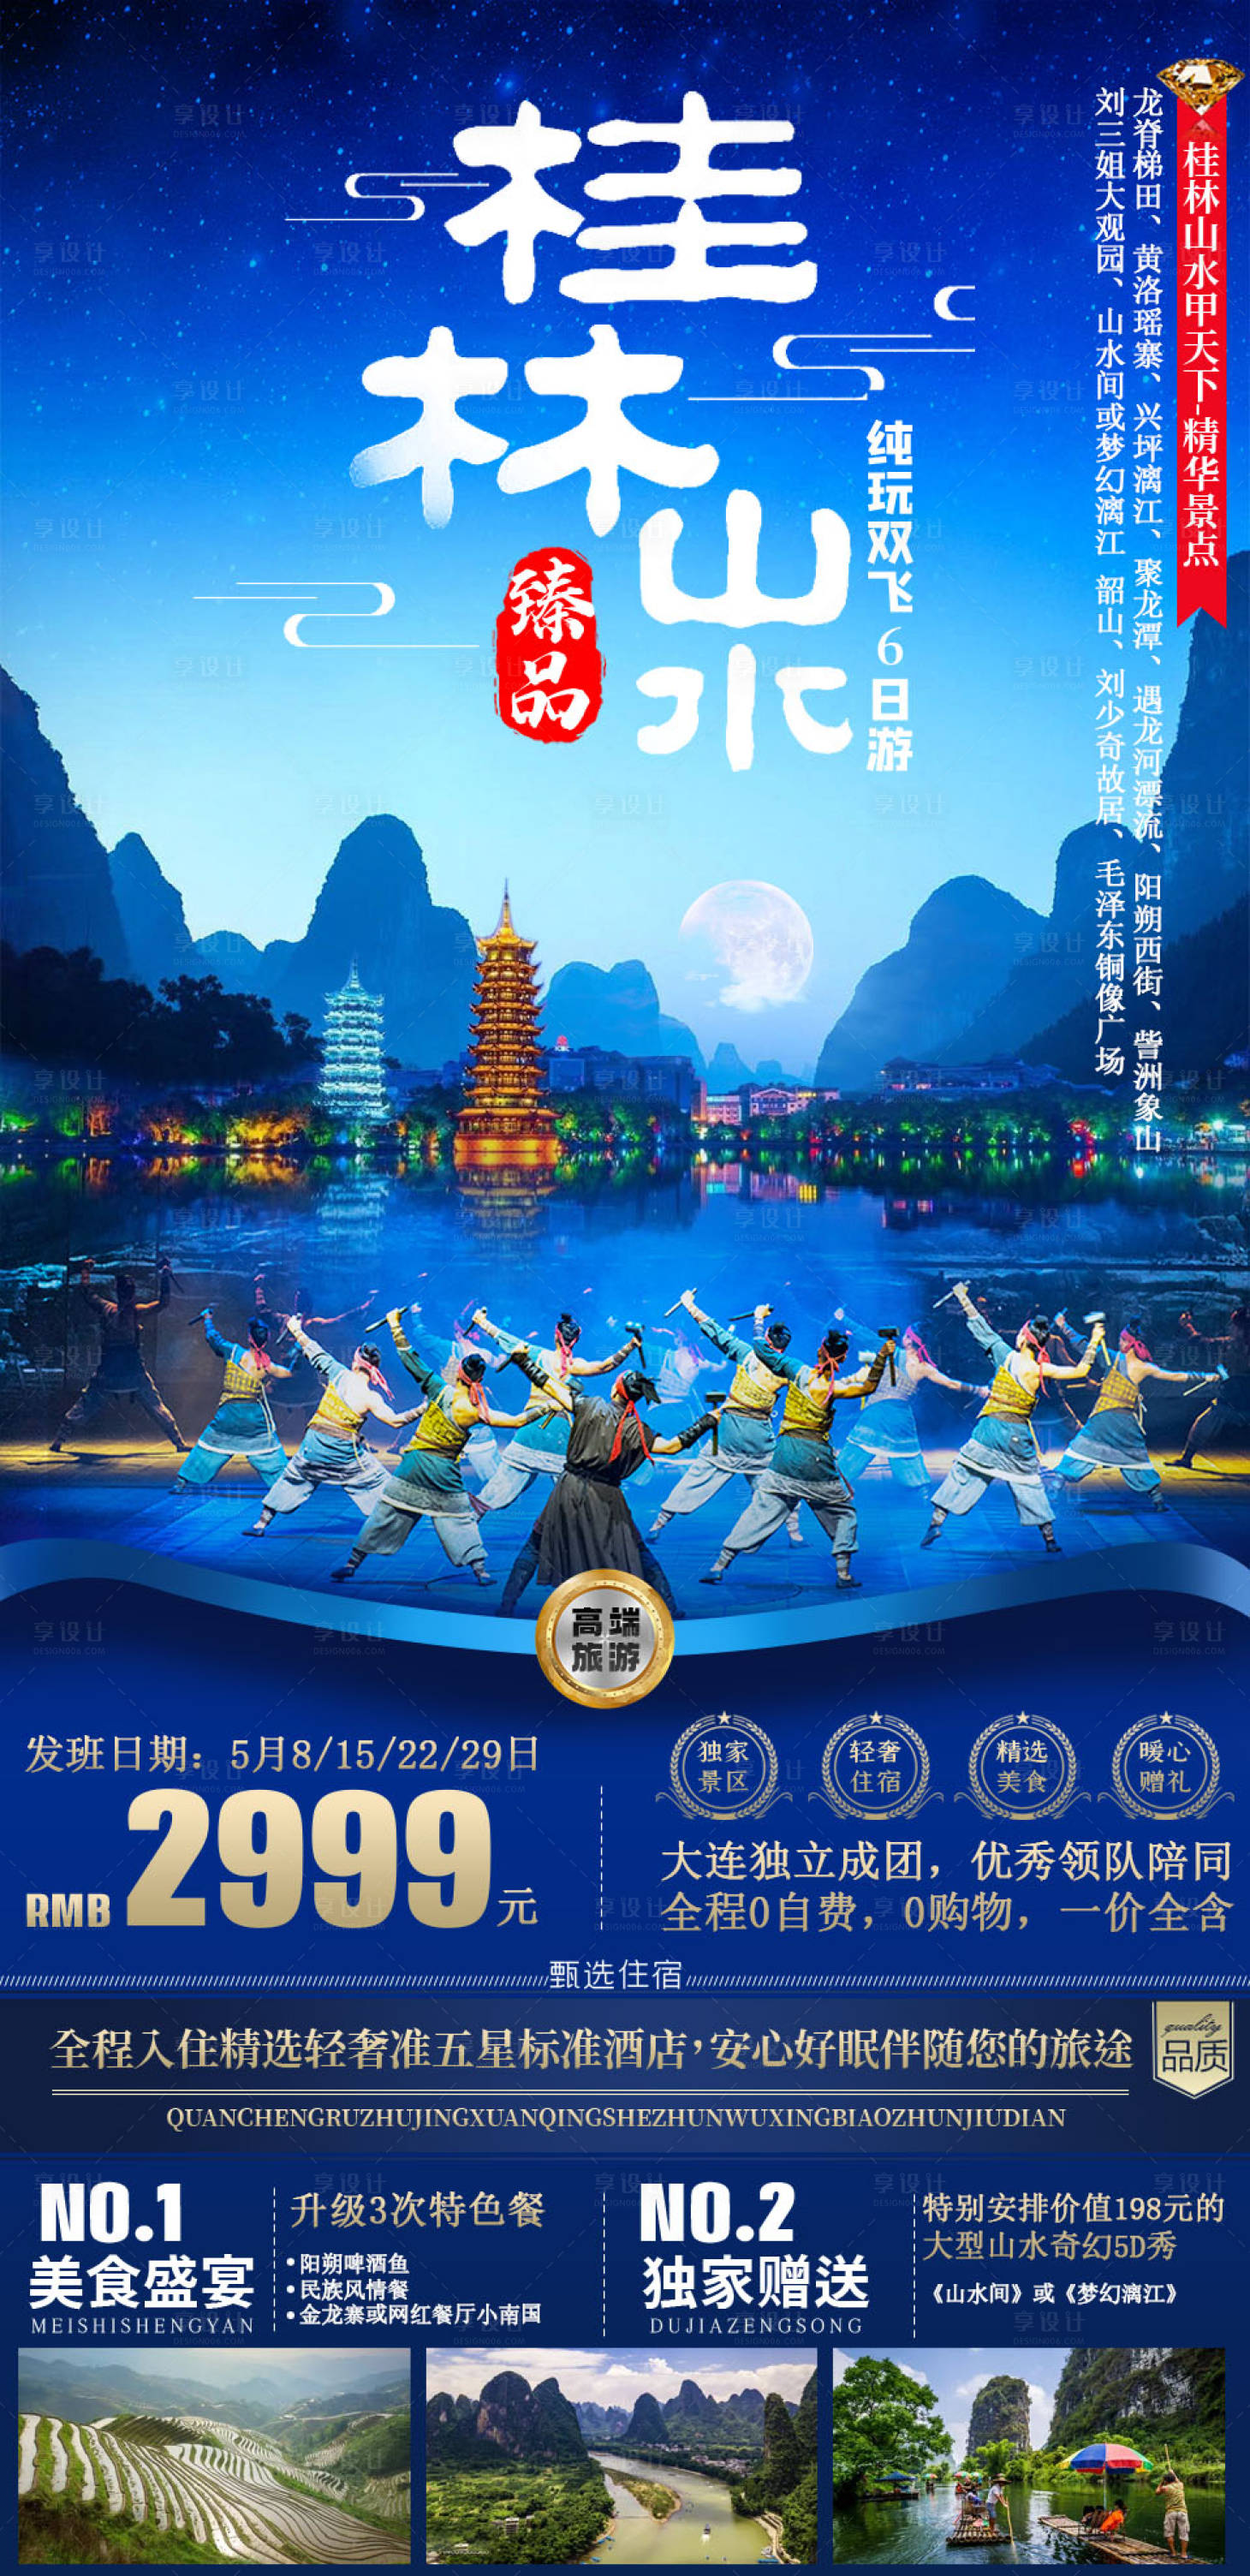 桂林旅游旅行社宣传美女海报图片下载 - 觅知网